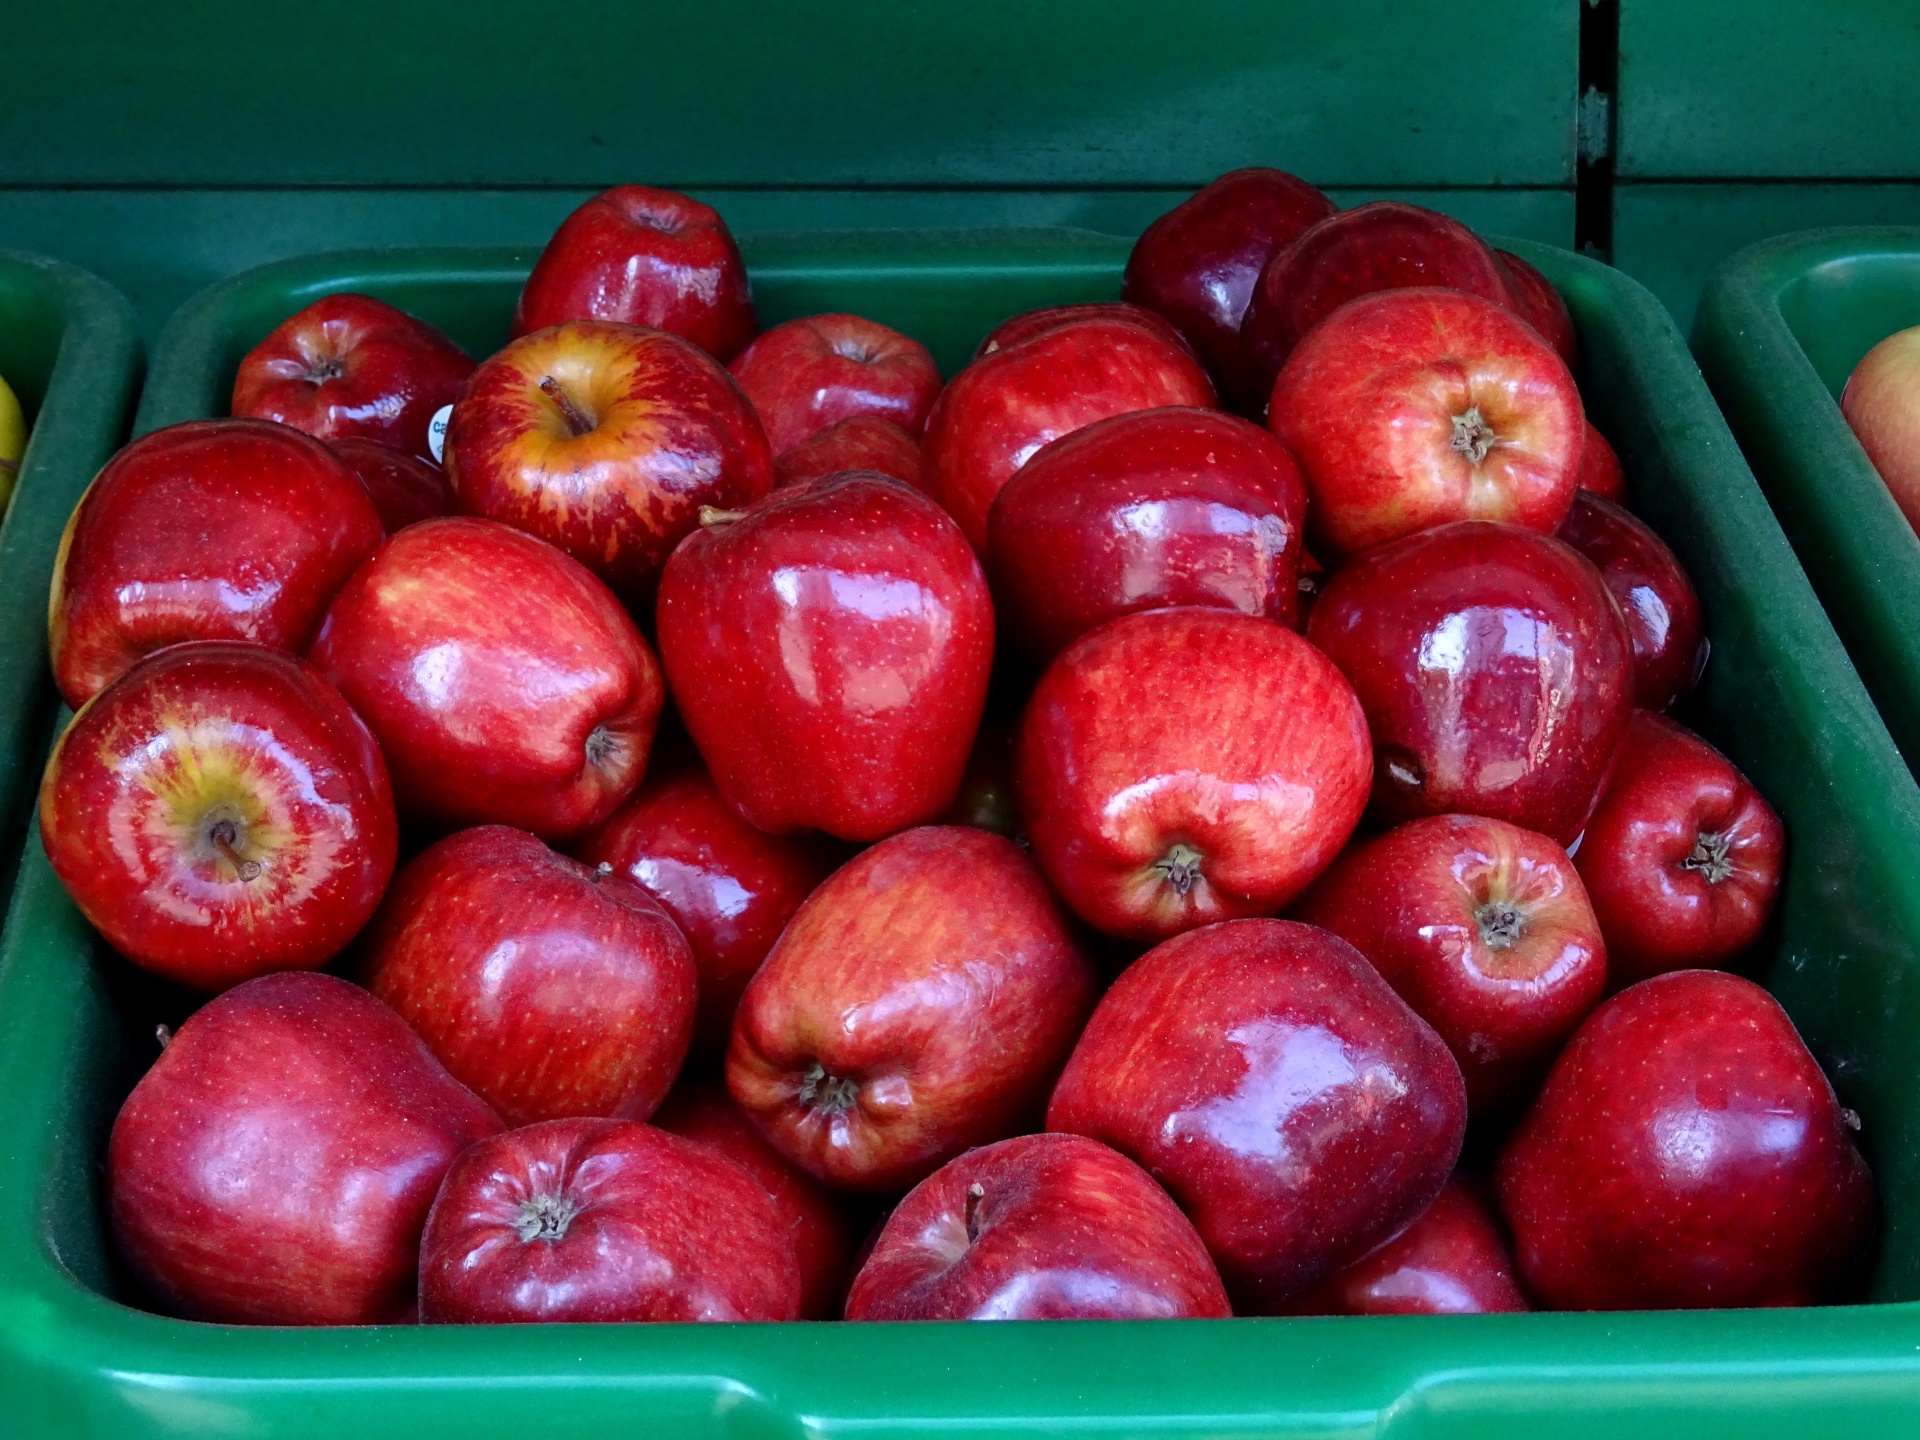 Heerlijk uitziende rode appels